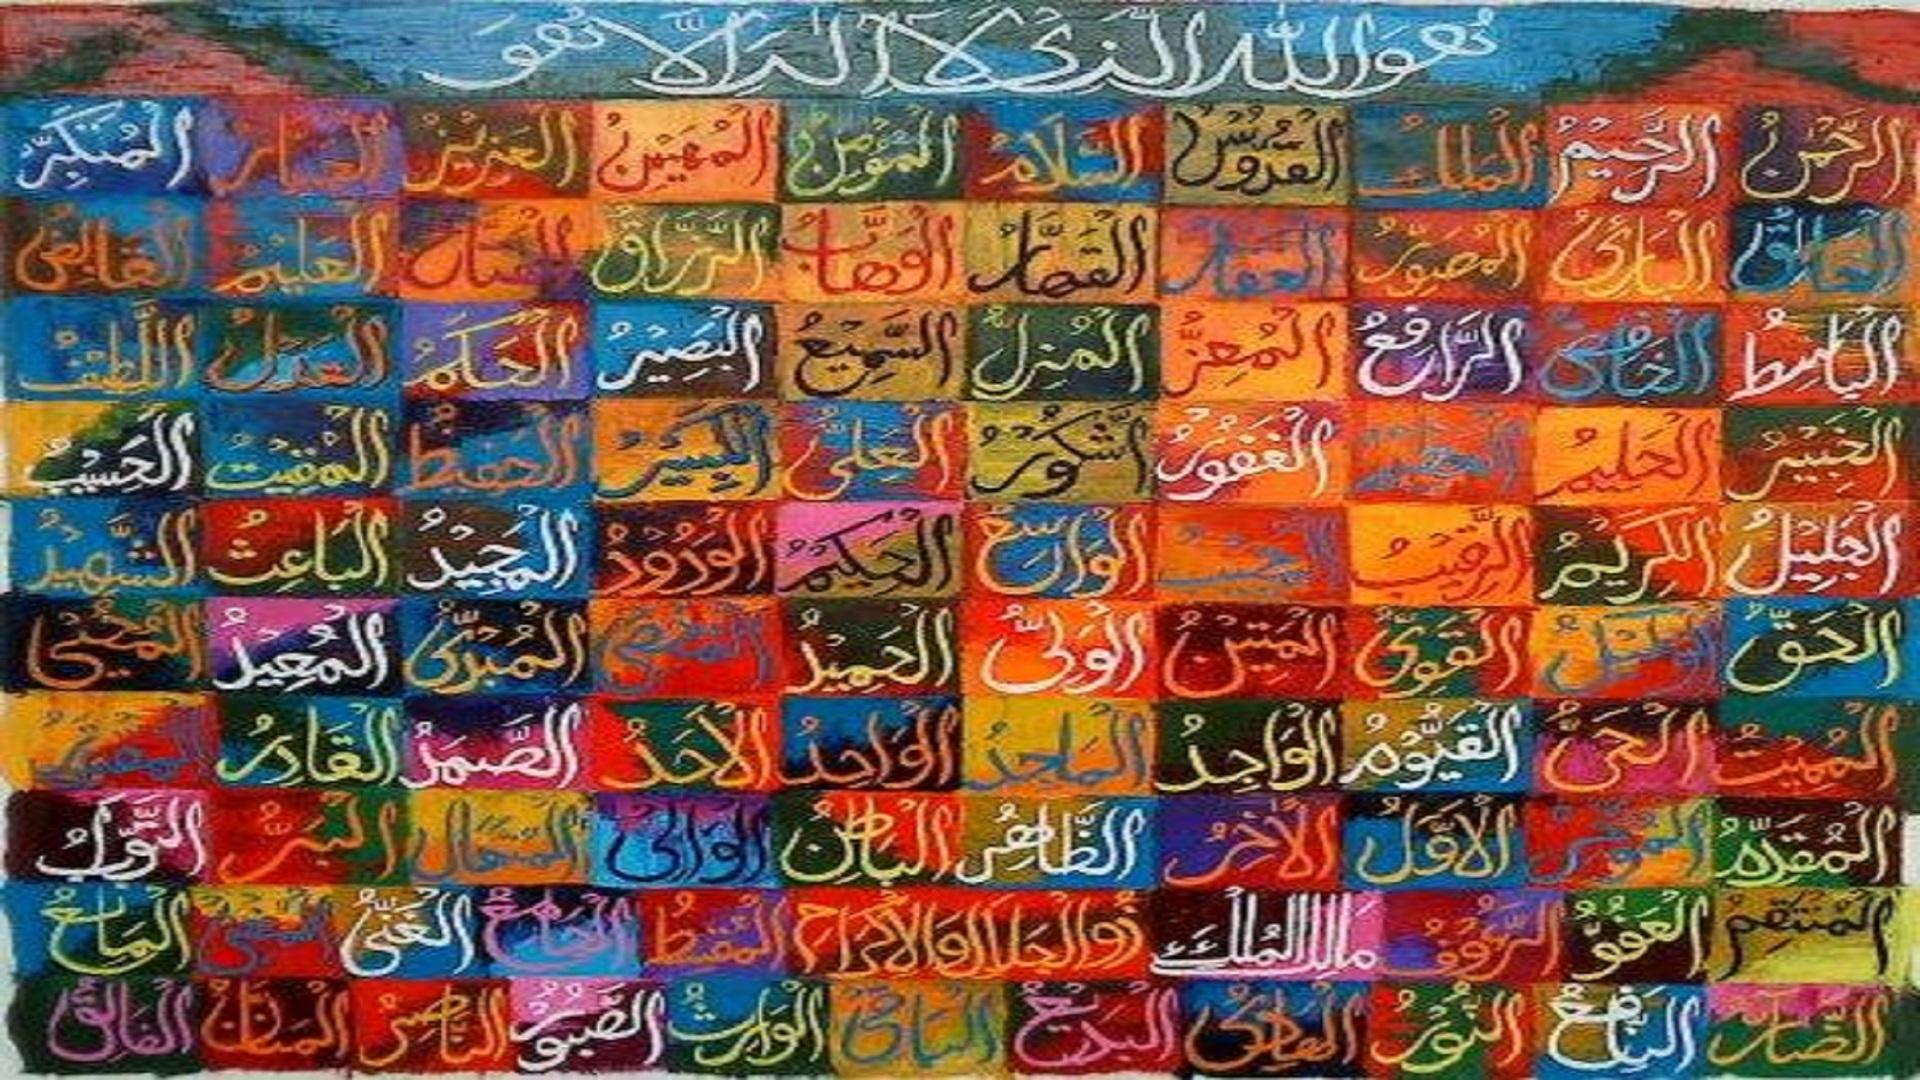 99 Names Of Allah Wallpaper Free Download - 99 Names Of Allah Painting ...